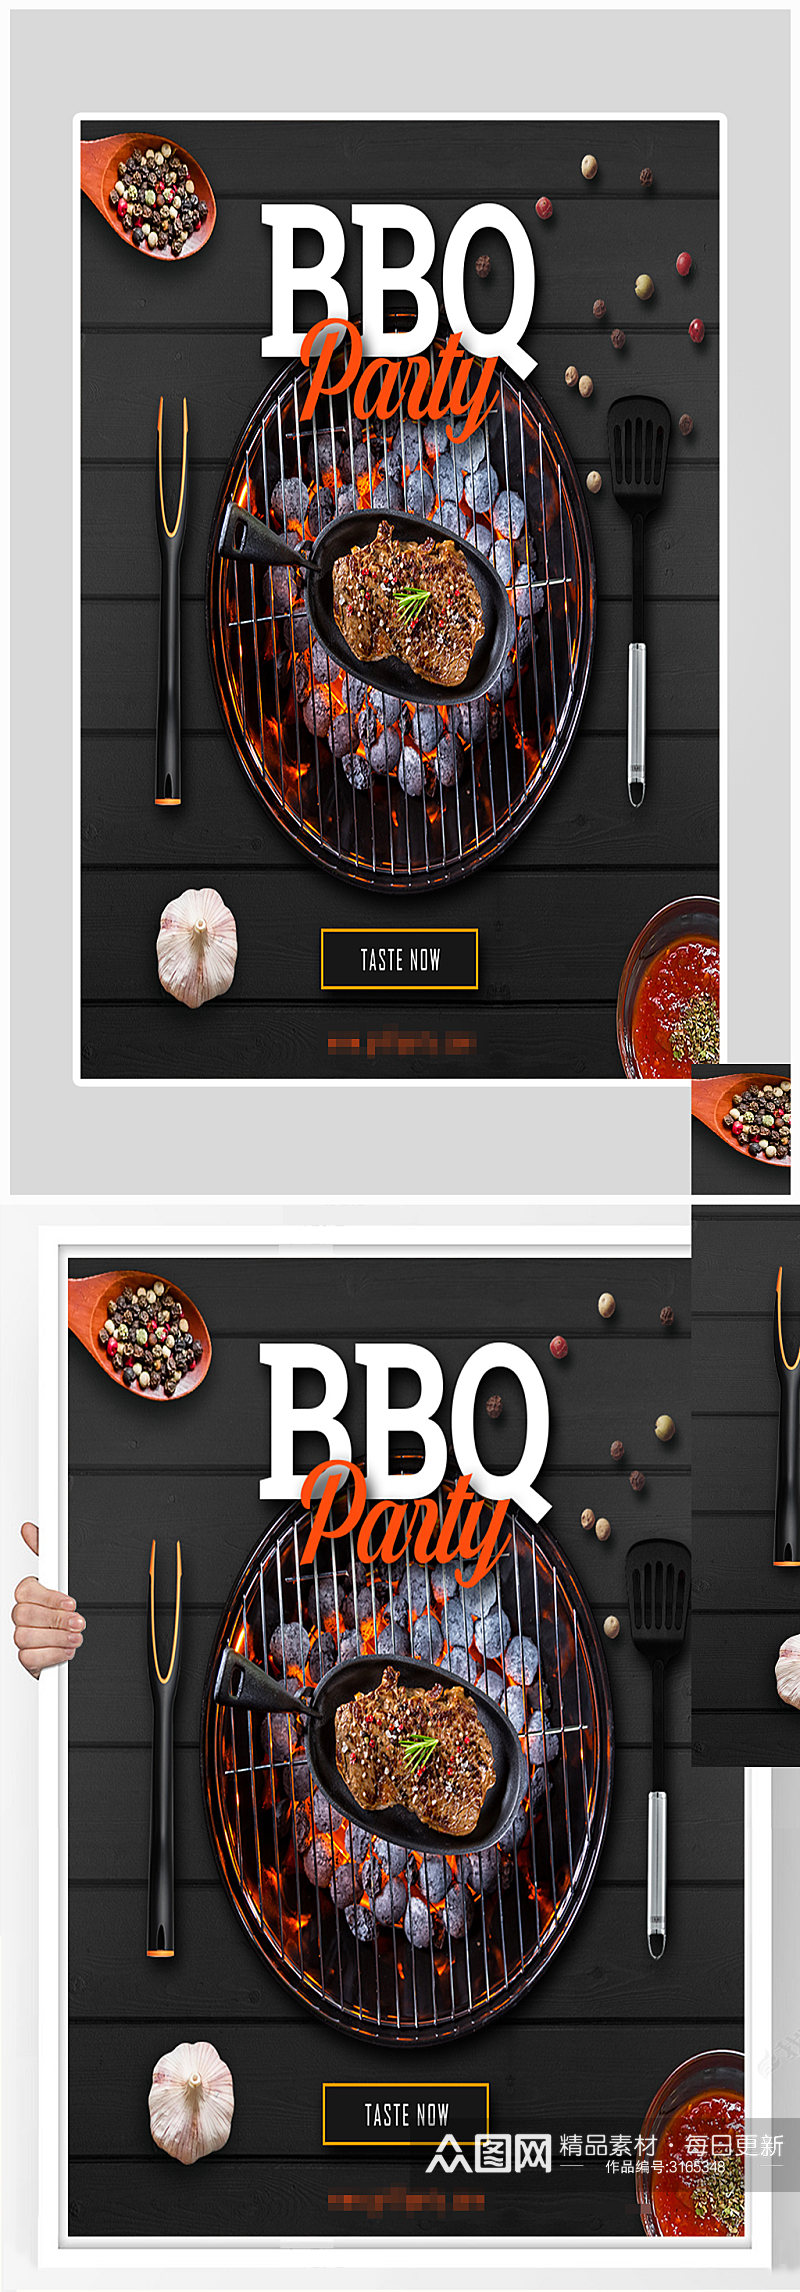 创意大气BBQ烧烤美食海报设计素材